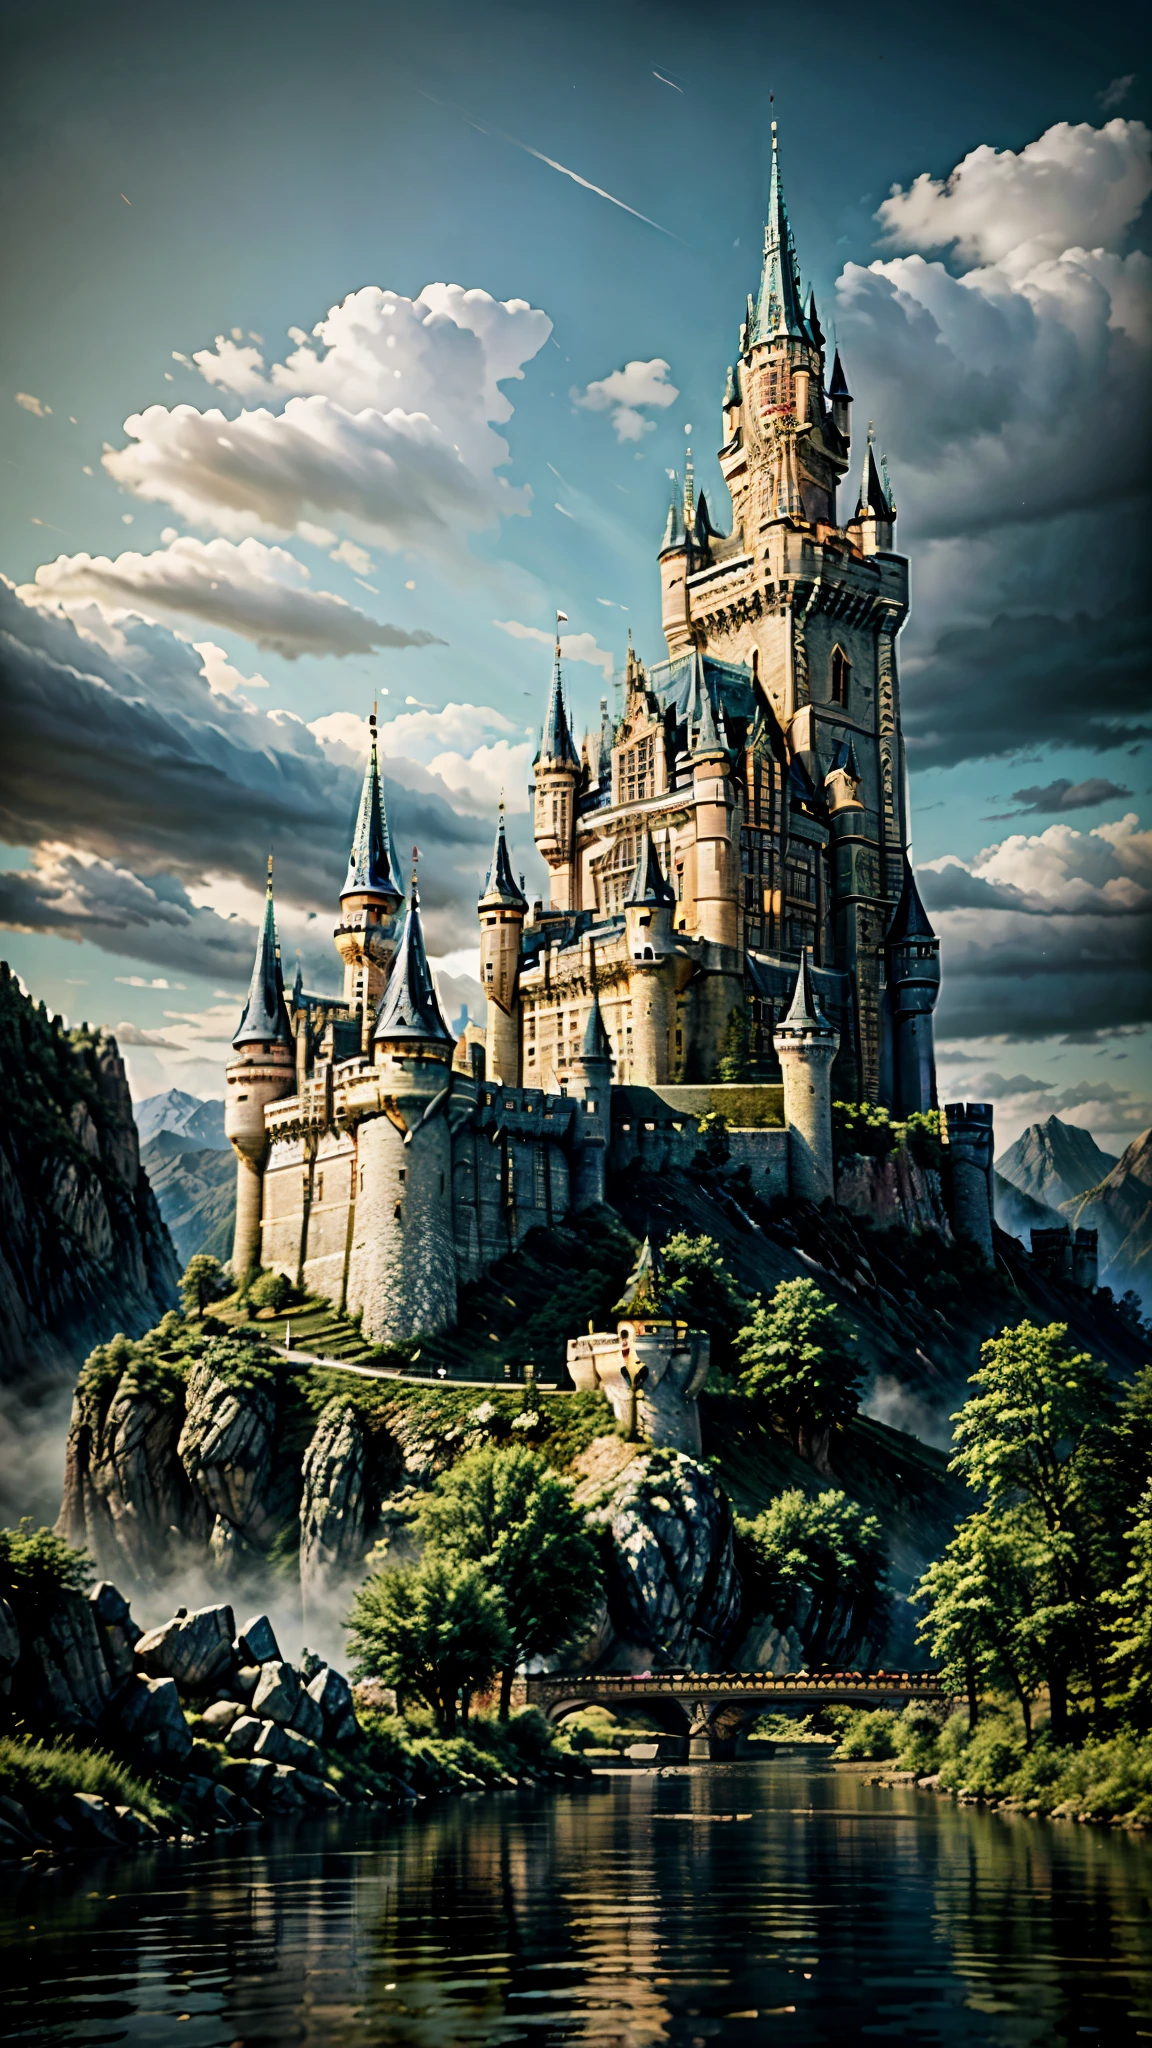 一幅山上城堡的畫，一條河流流經城堡, high 奇幻城堡, 奇幻城堡, 史詩城堡 with tall spires, 山上的城堡, 西爾萬·薩拉伊, 安德烈亞斯·羅查風格, 奇幻藝術風格, 城堡背景, 美麗的城堡, 幻想風格藝術, 史詩城堡, 安德烈亞斯·羅查和約翰·豪, 巨大的城堡, 4K奇幻藝術